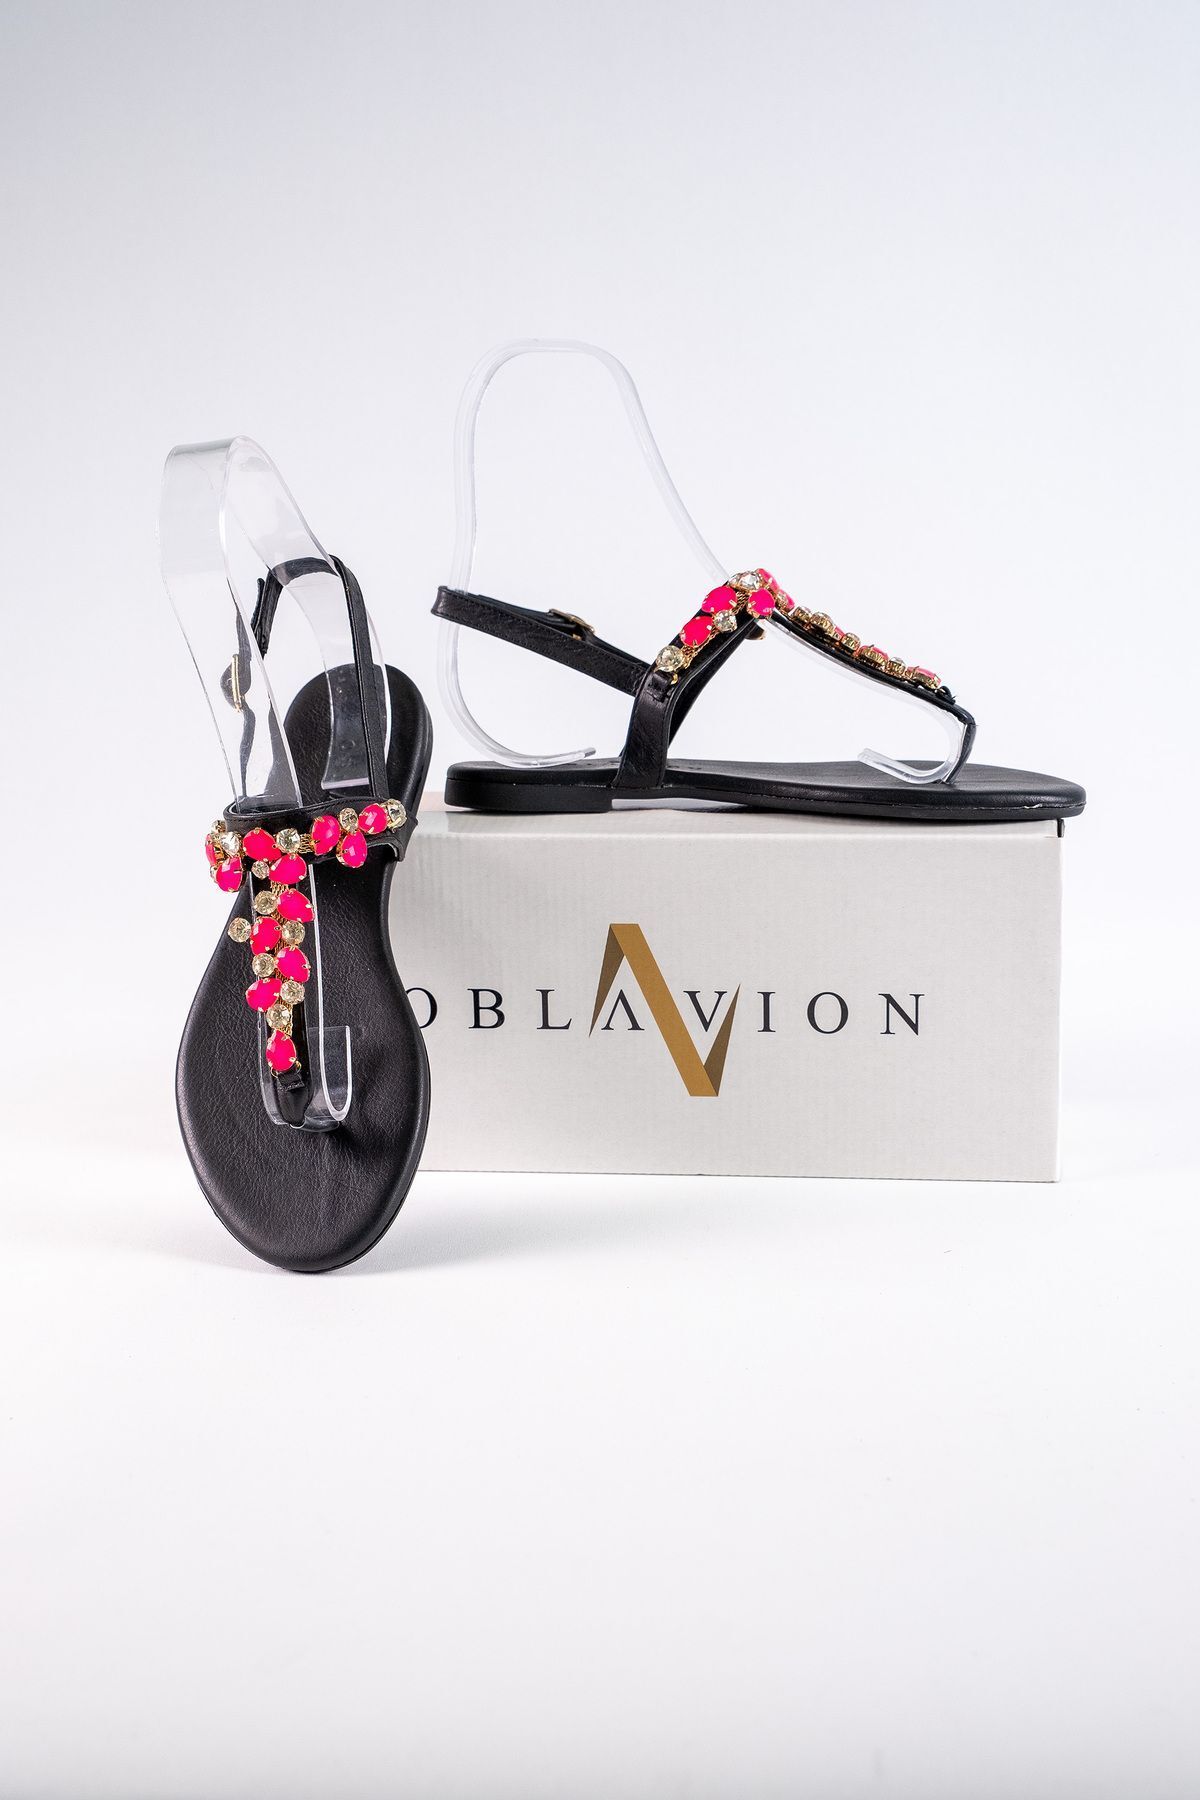 Oblavion Kadın Siyah Pembe Taşlı Hakiki Deri Günlük Taşlı Sandalet